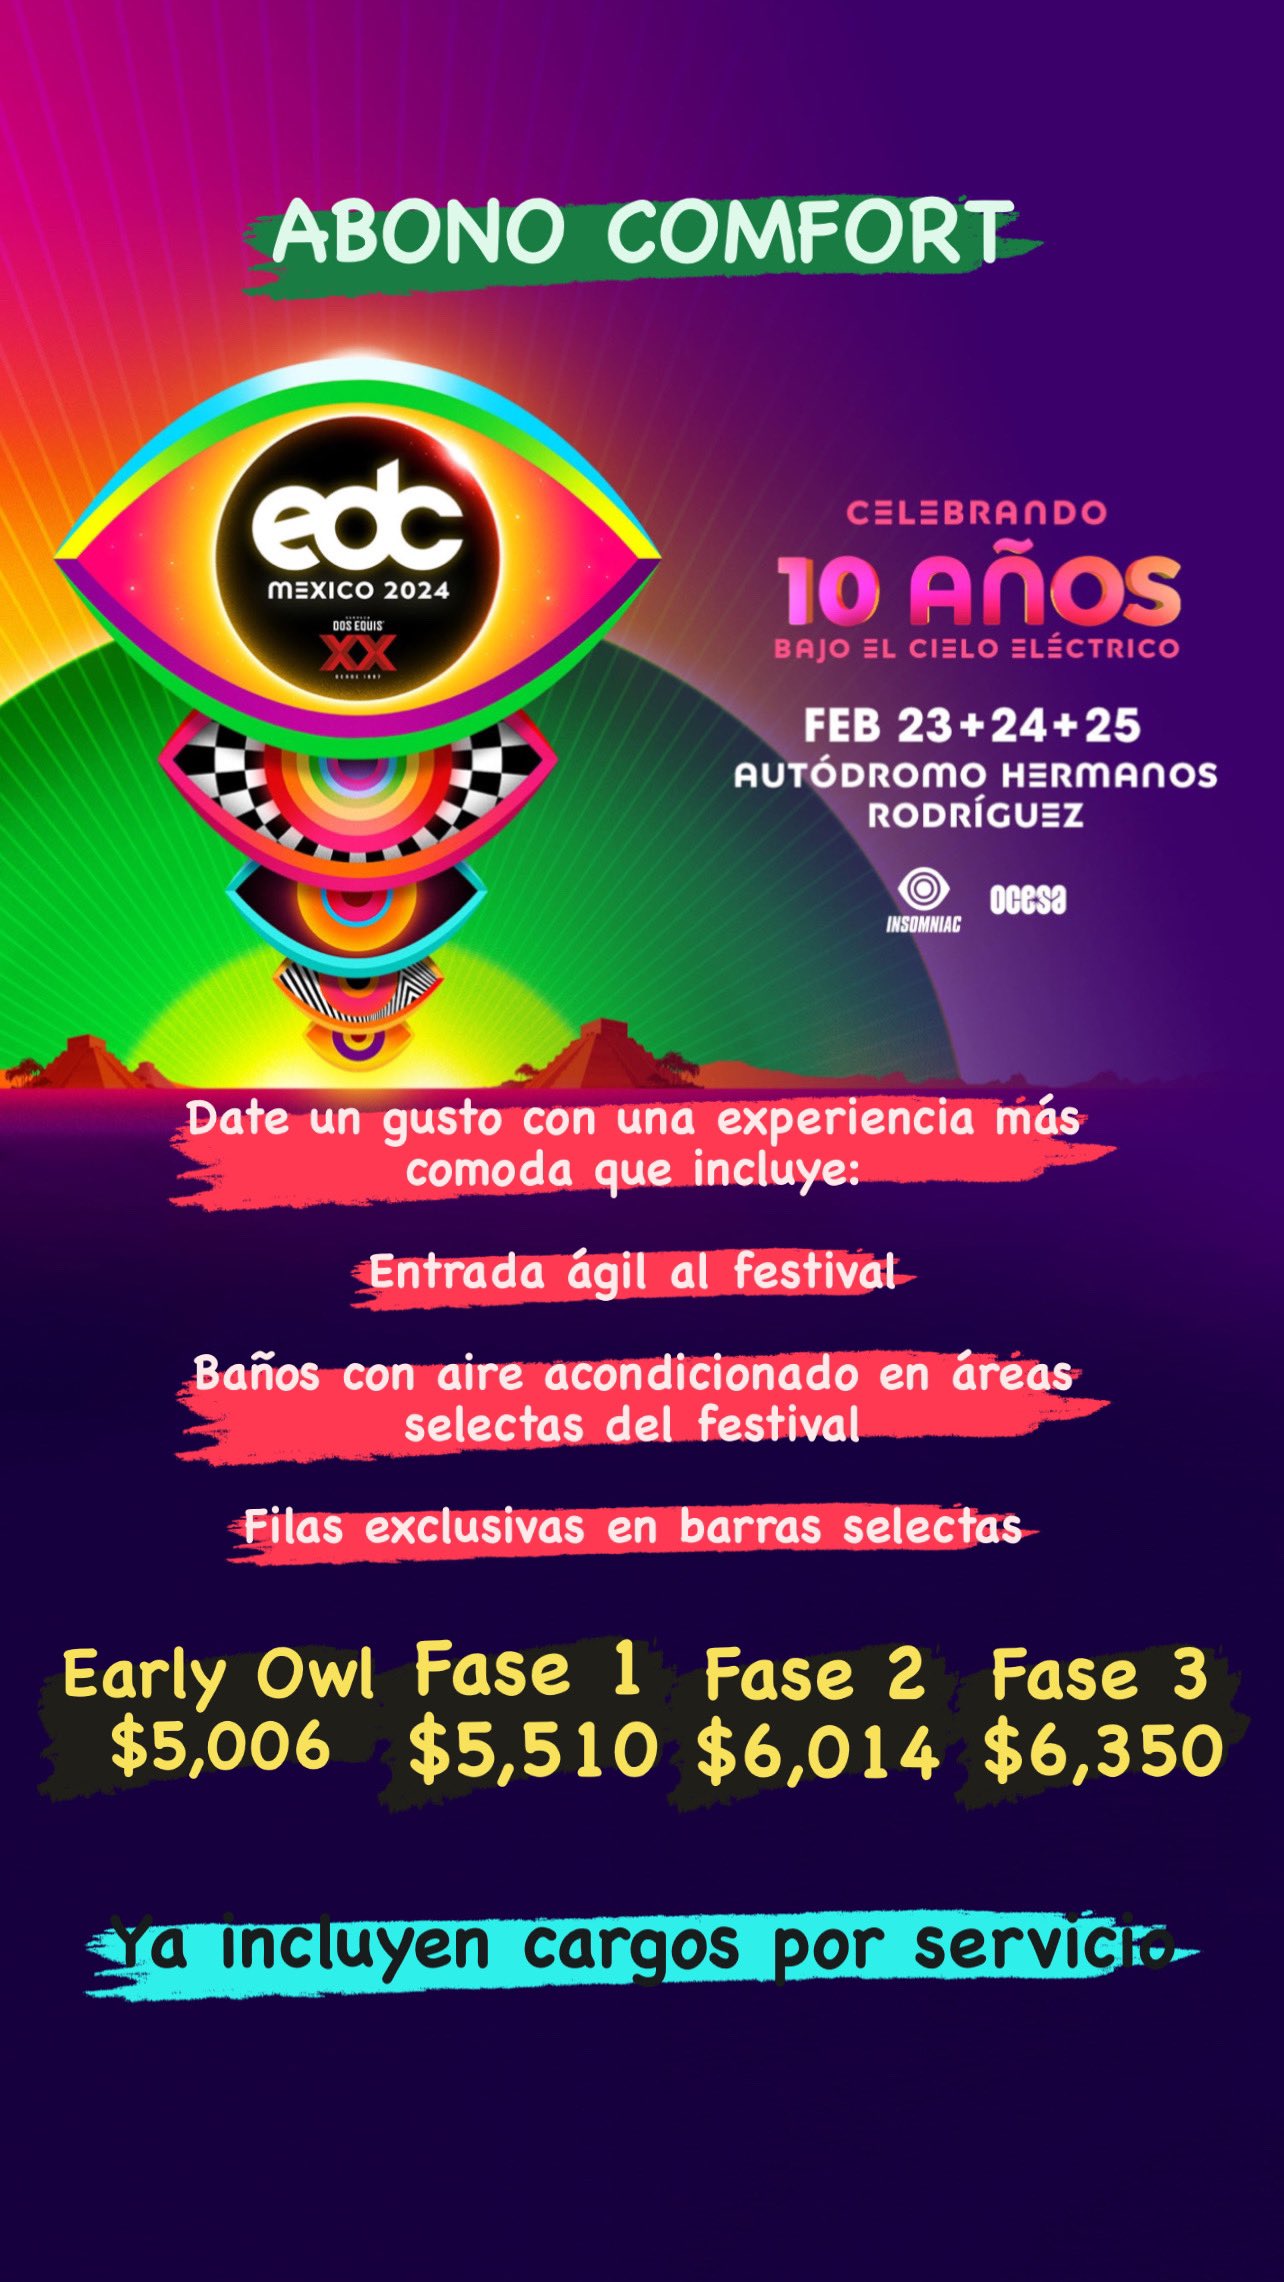 EDC México 2024: Insomniac y Ocesa presentan detalles del evento 23